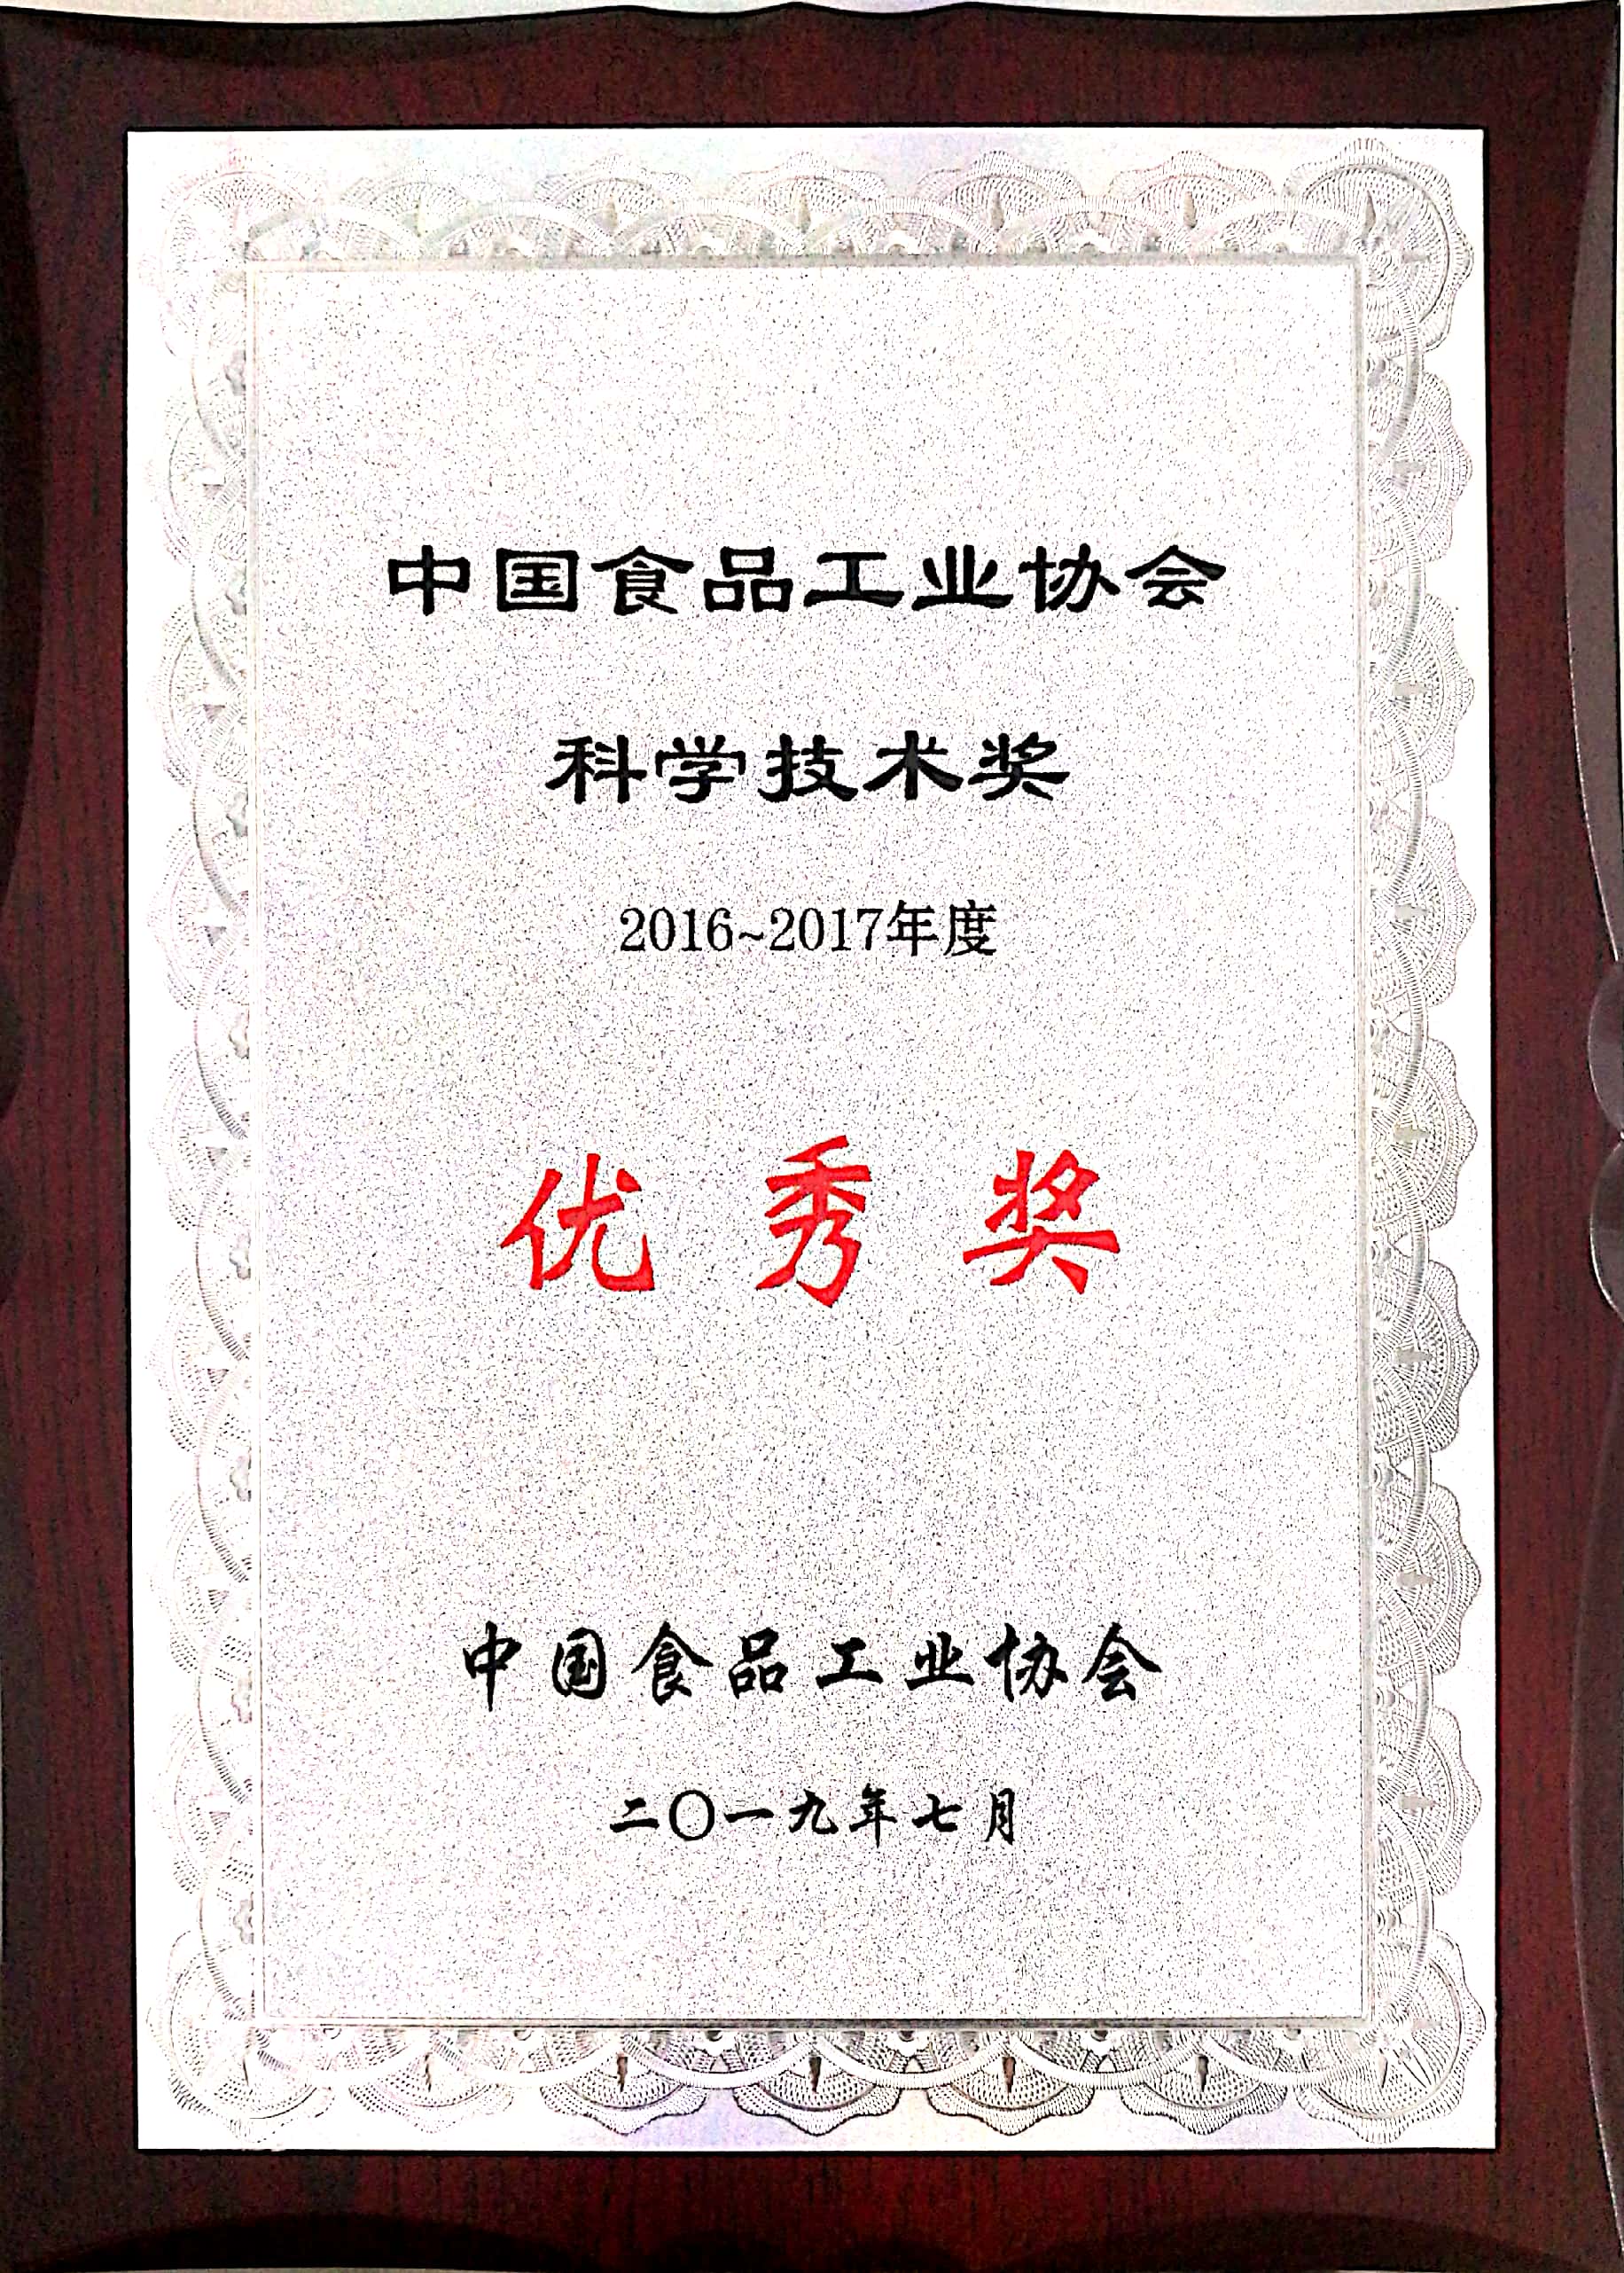 2016-2017年度中国食品工业协会科学技术奖 优秀奖